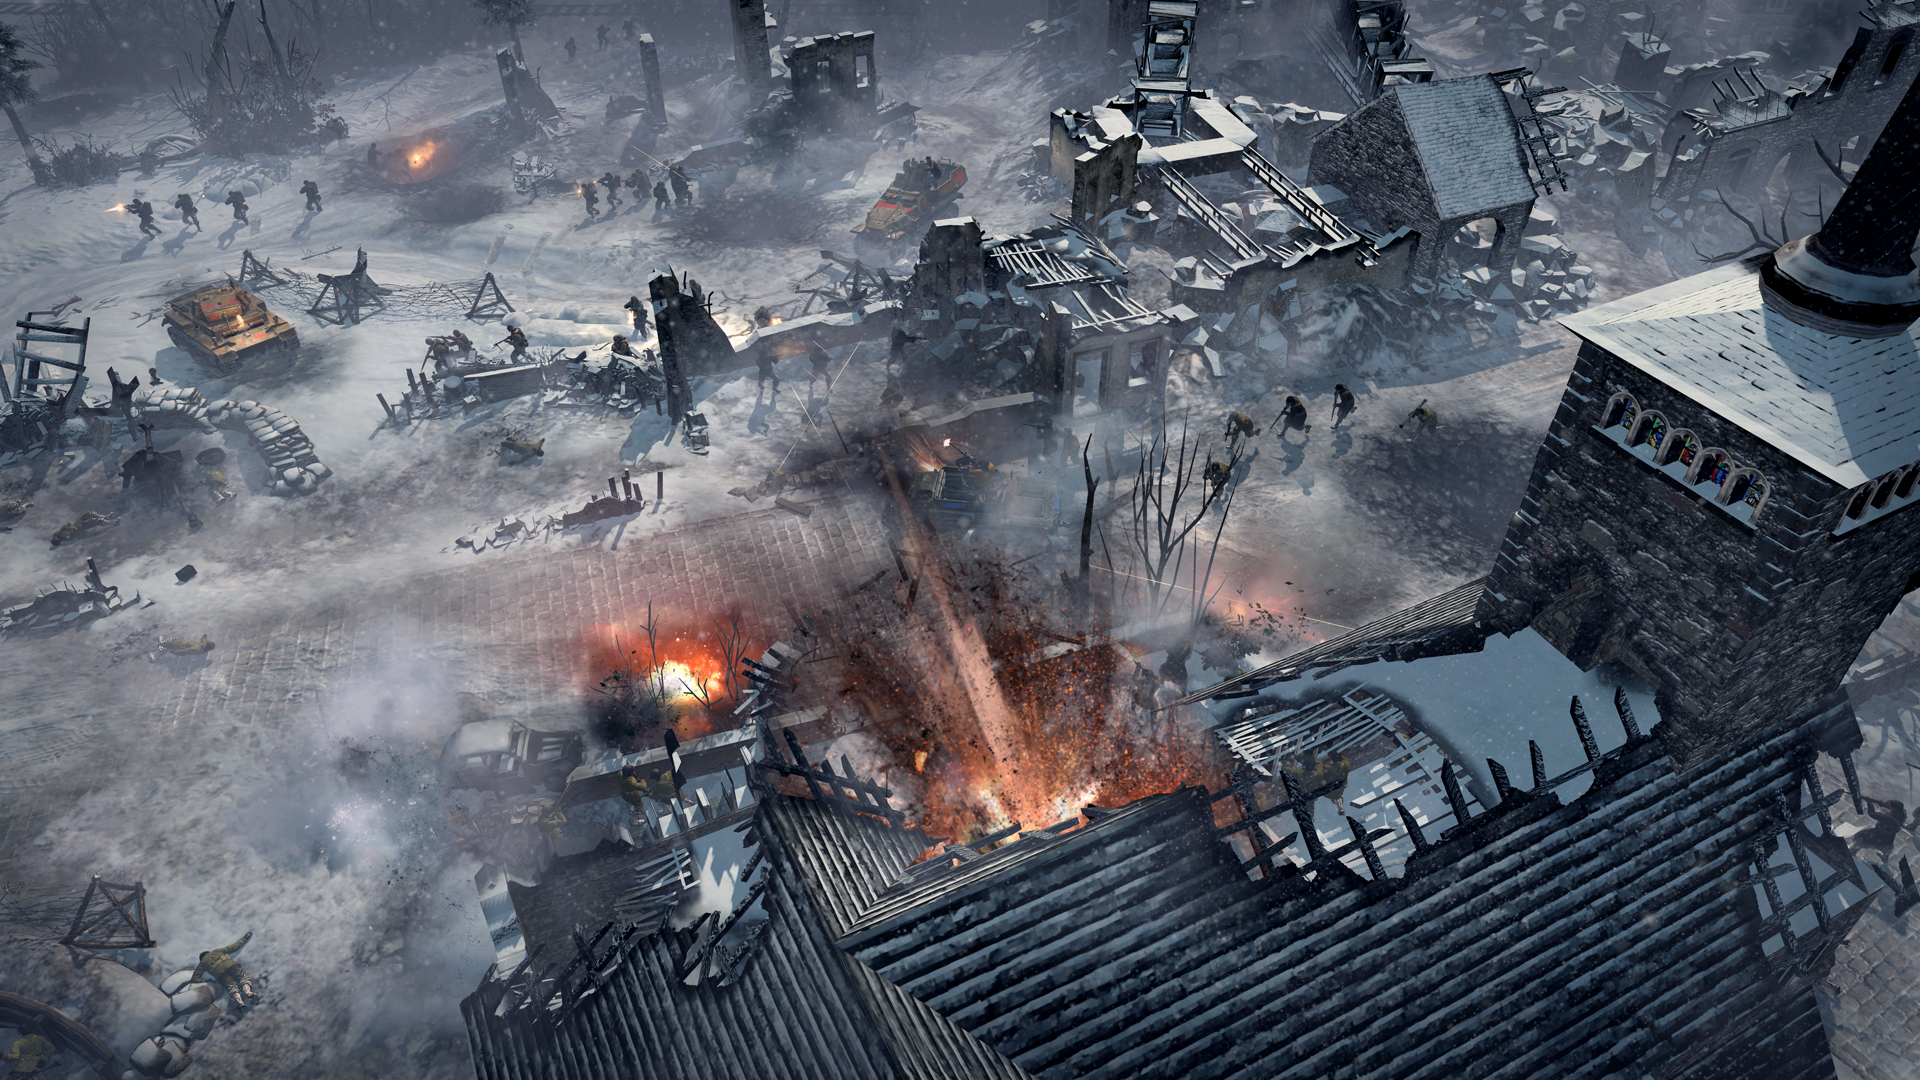 بہترین جنگی کھیل: ہیرو کی کمپنی 2: آرڈنیس حملہ۔ تصویر میں فوجیوں کو ایک سرد بنجر زمین کی تزئین میں دکھایا گیا ہے جو اوپر سے دیکھا گیا ہے۔